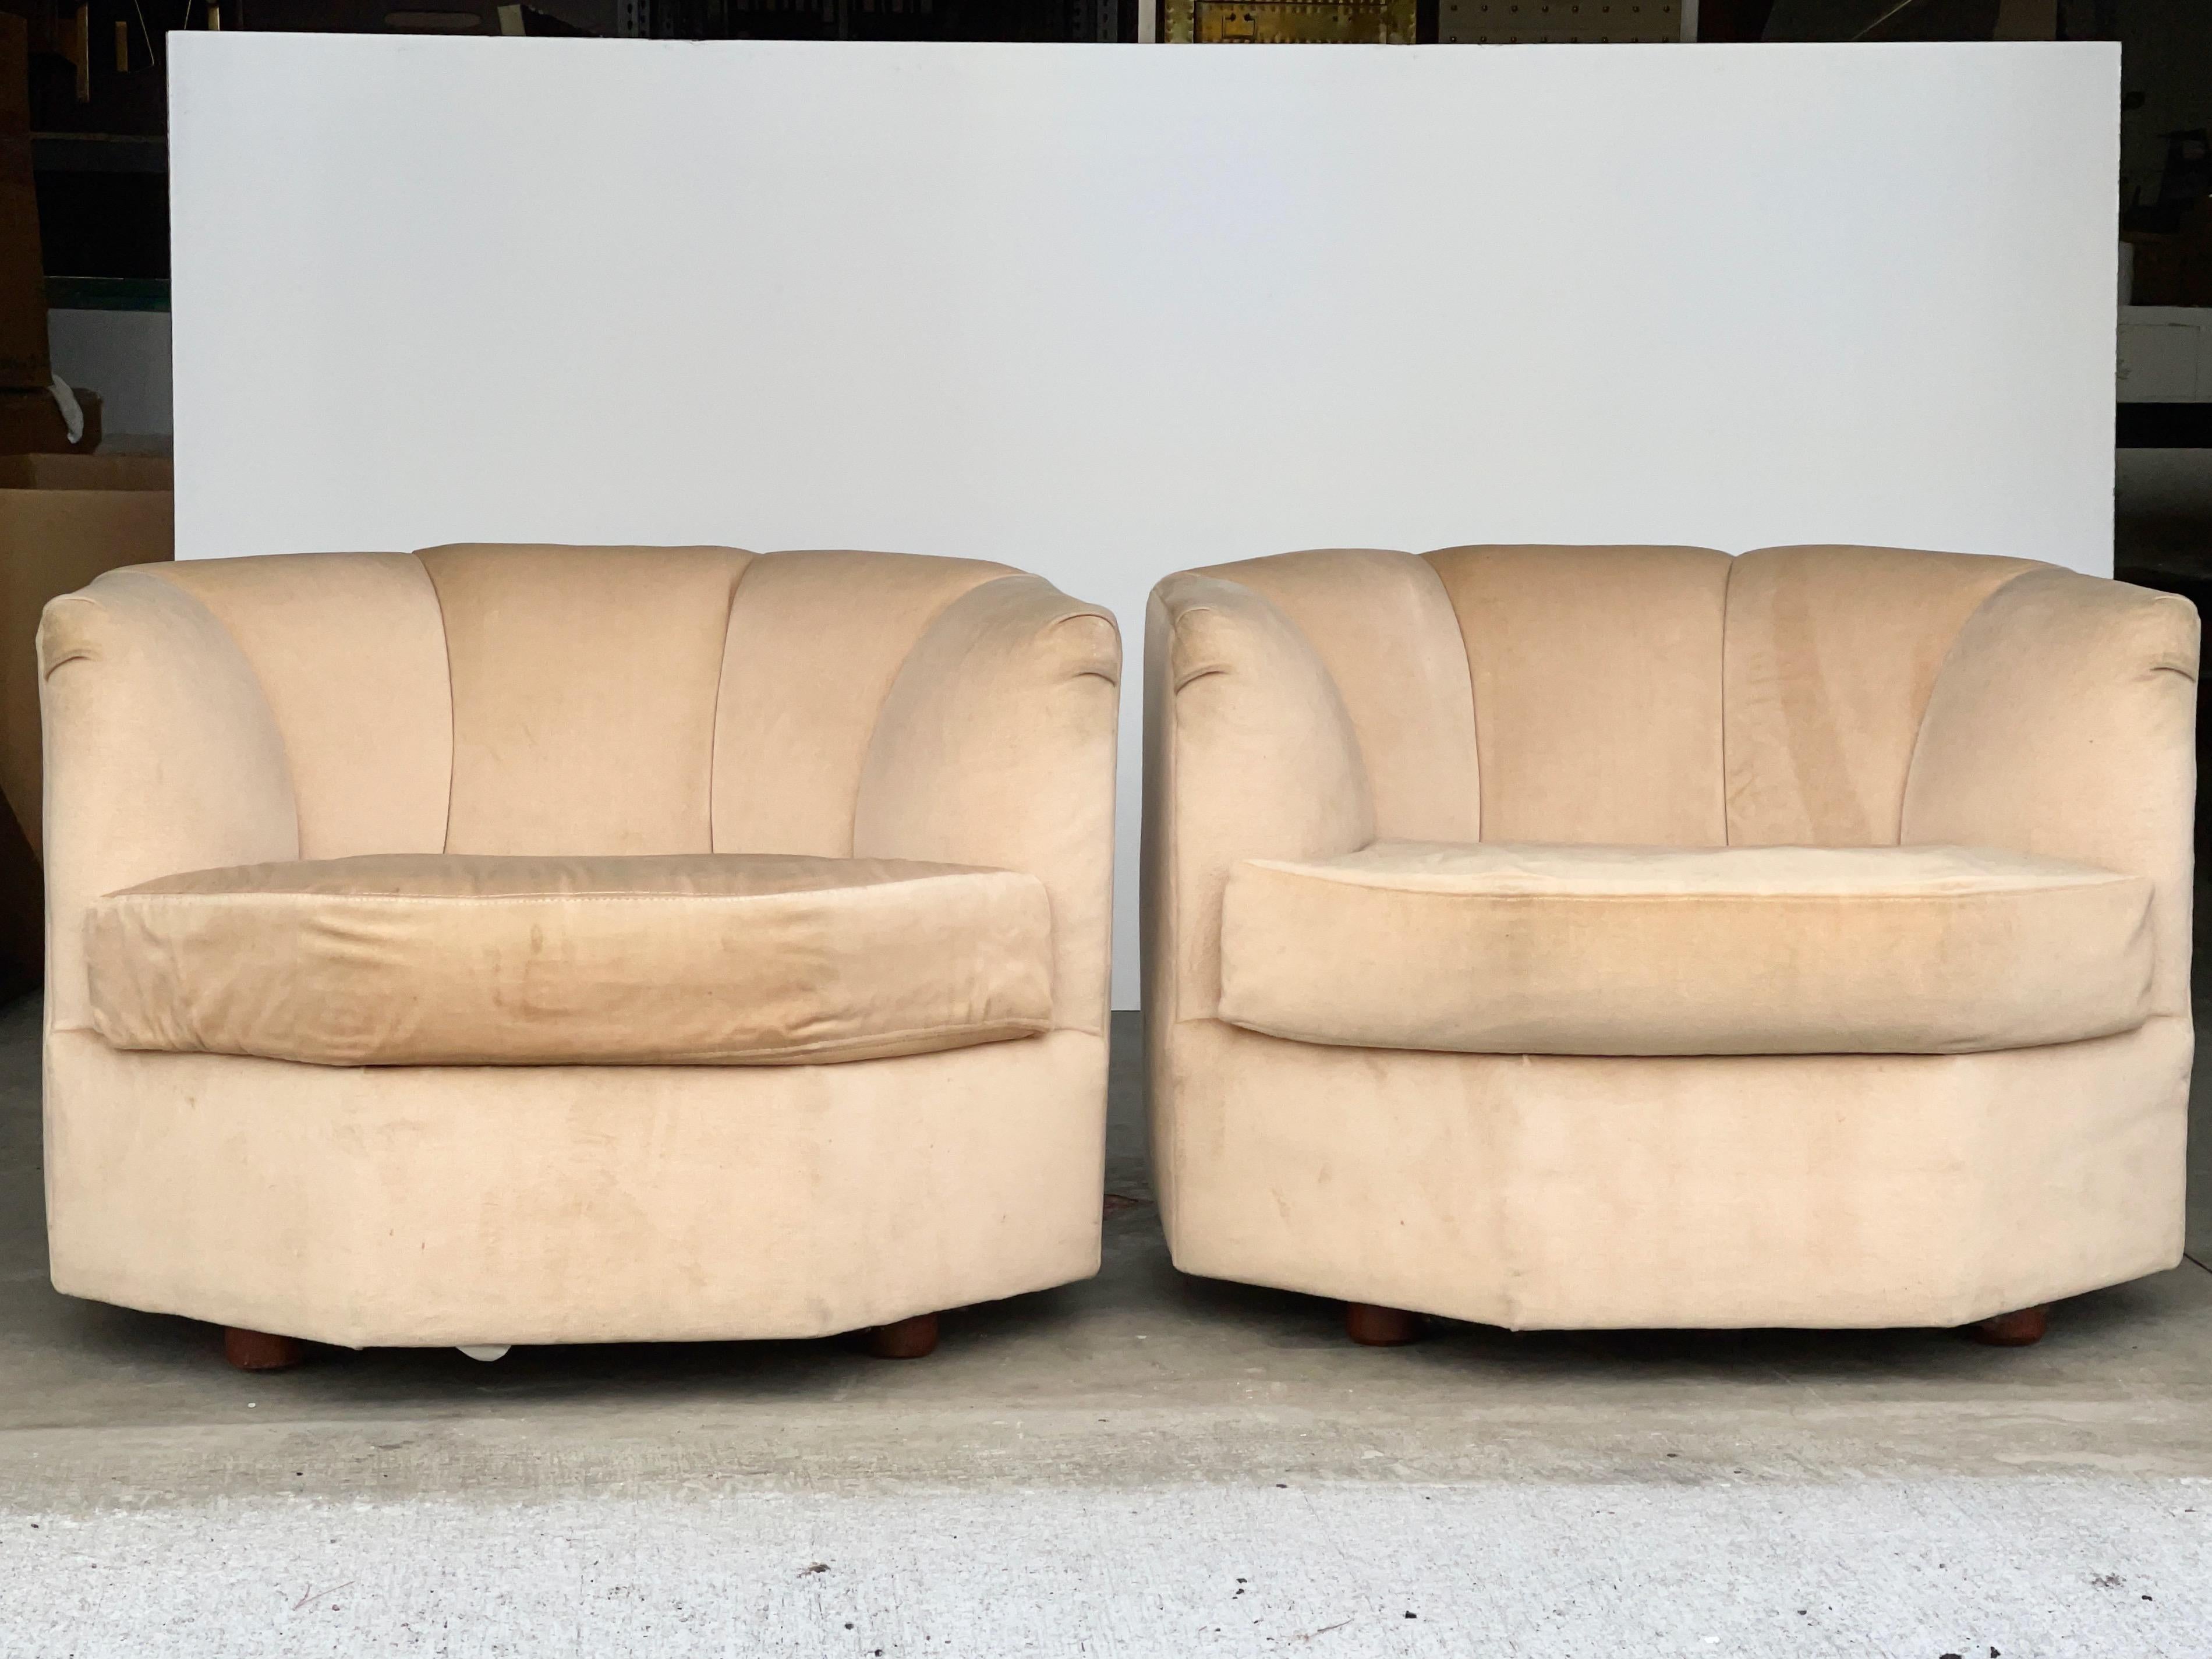 Ein Paar achteckige Loungesessel, die 1979 von Selig Manufacturing für ihre modulare Sitzmöbelkollektion 